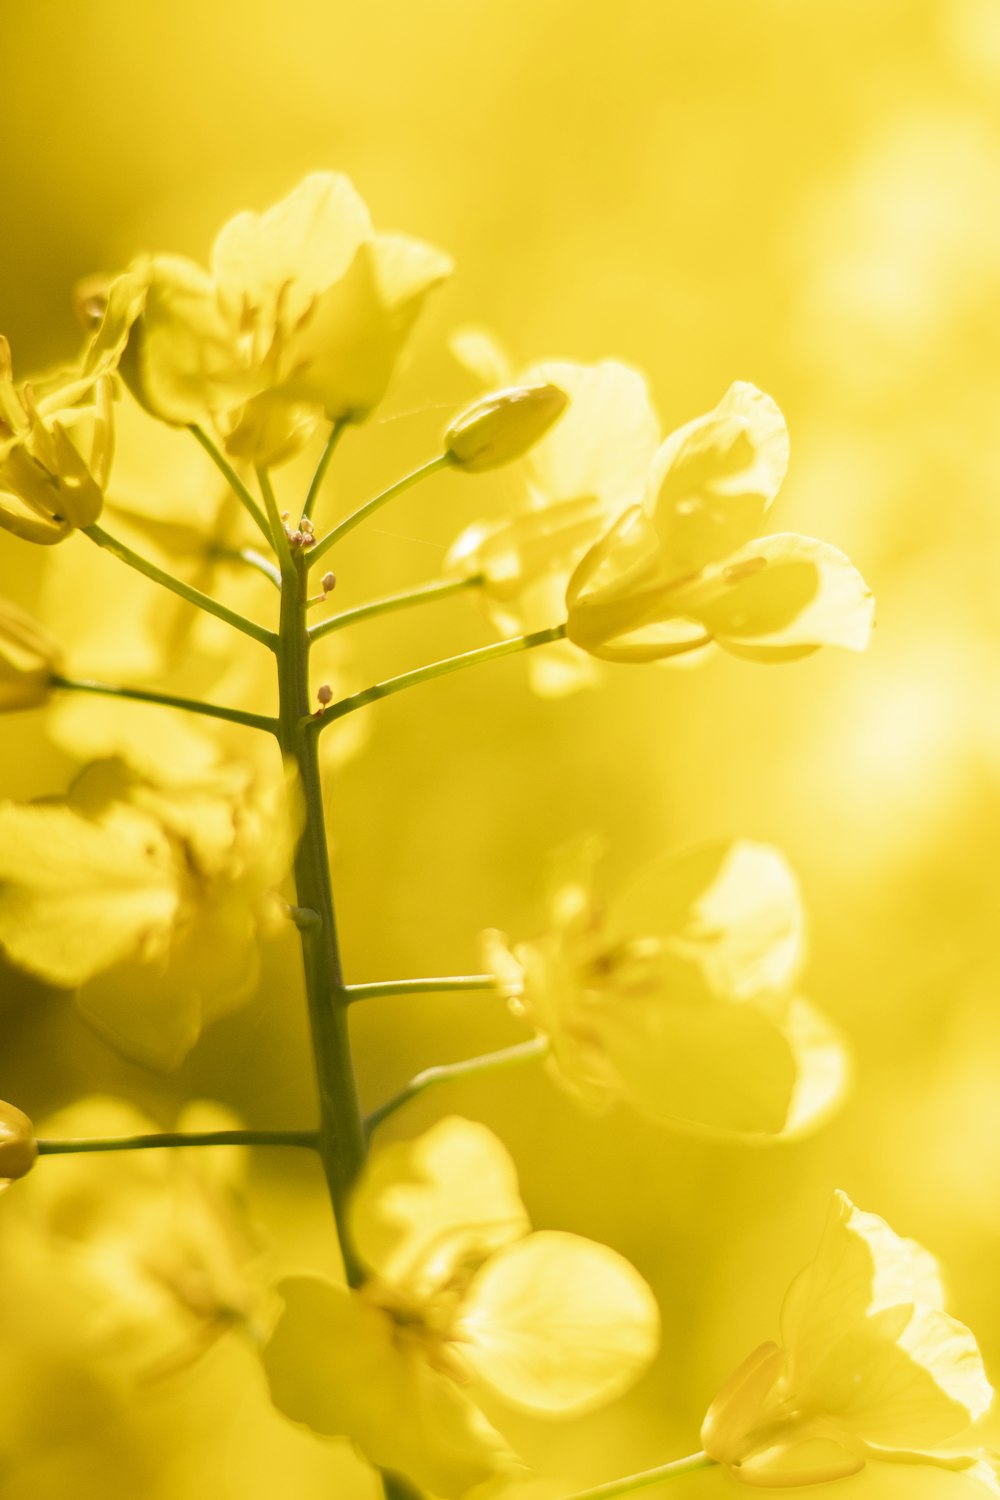 Hình ảnh hoa vàng: Với những ai yêu thích hoa và muốn tìm kiếm những bức hình ảnh đẹp mắt, chào mừng bạn đến với bộ sưu tập hình ảnh hoa vàng tuyệt đẹp. Với những tông màu vàng sáng và rực rỡ, những hình ảnh này sẽ đưa bạn đến những vùng đất hoang sơ, tươi sáng và xinh đẹp.